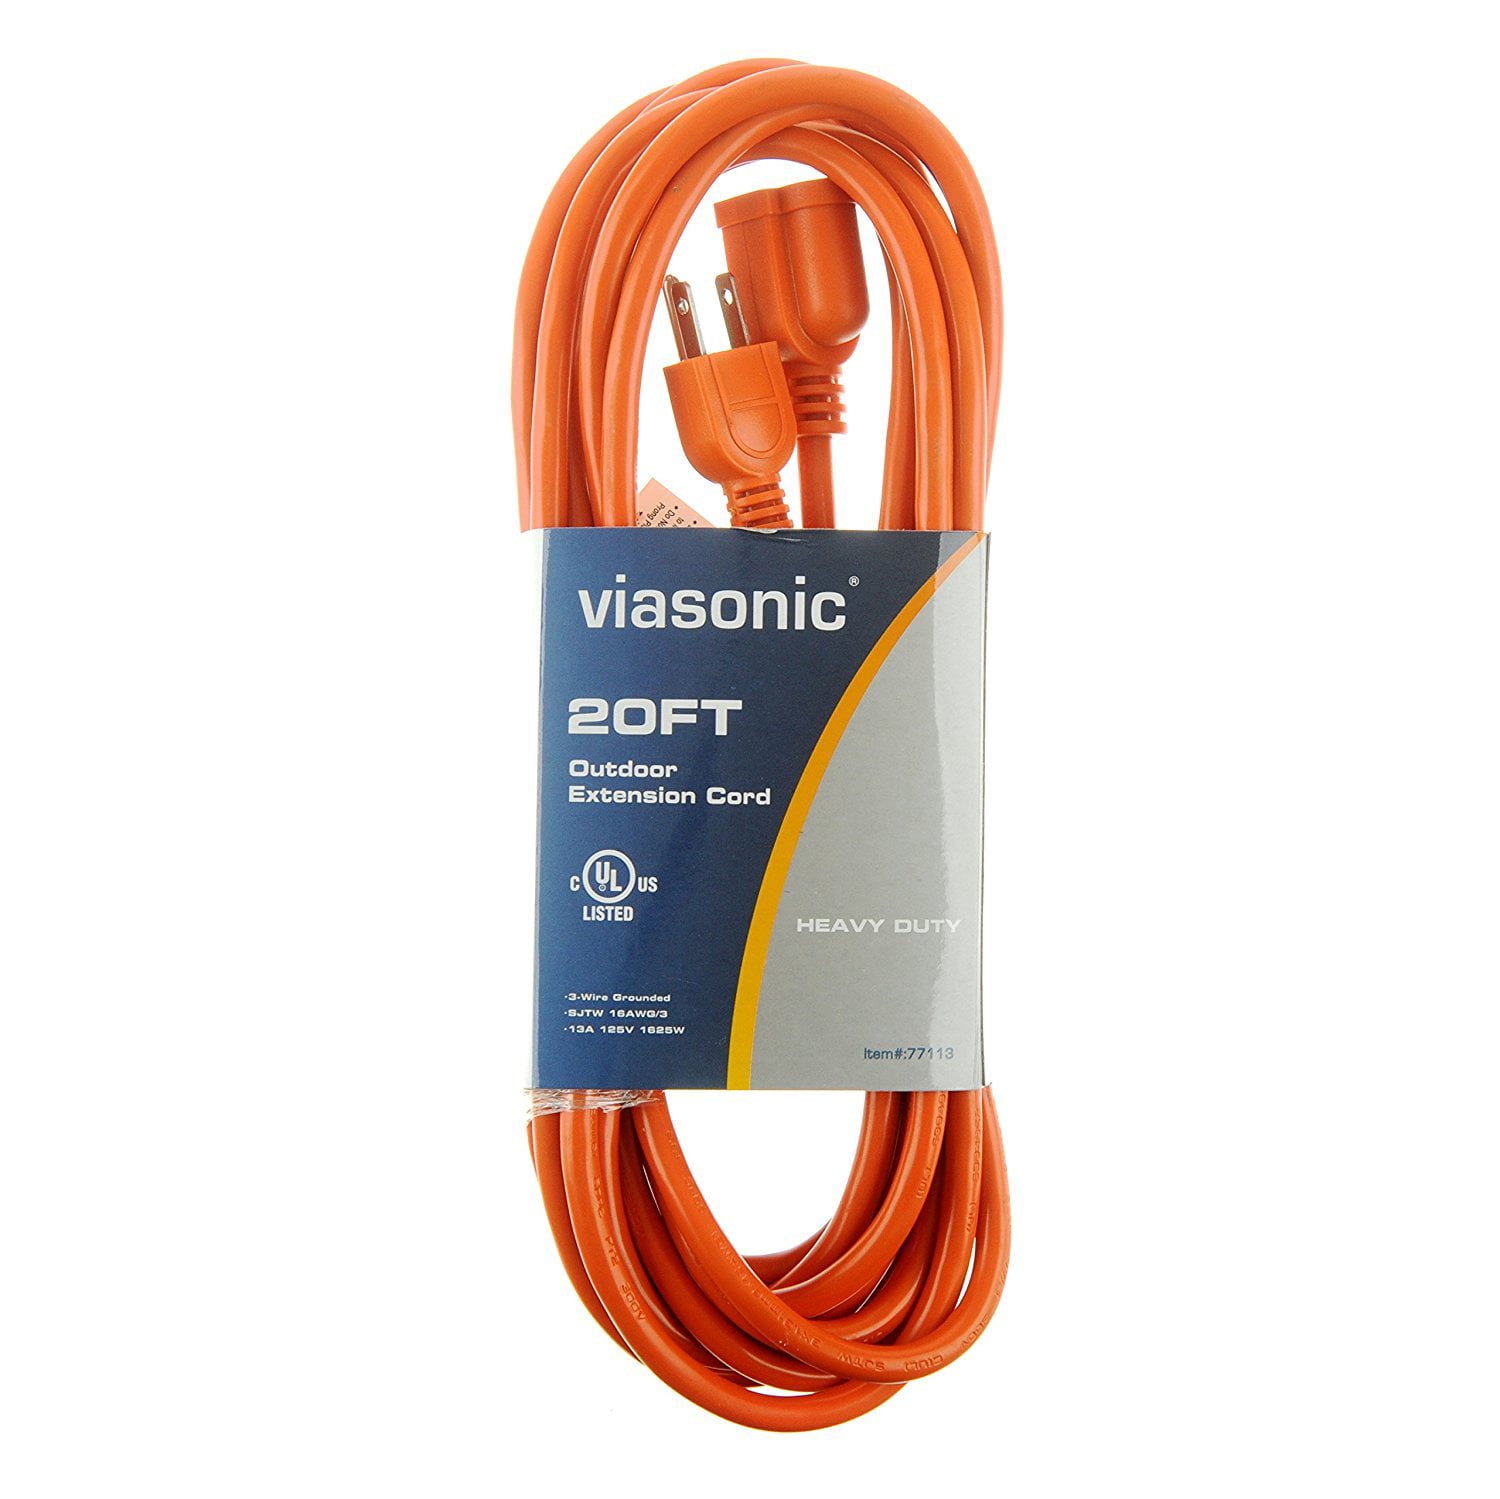 ALEKO ECOI143G15FT Heavy Duty Extension Cord Indoor Outdoor with Lighted Plug ETL Certified SJTW Plug 14/3 Gauge 125 Volt 15 Feet Orange